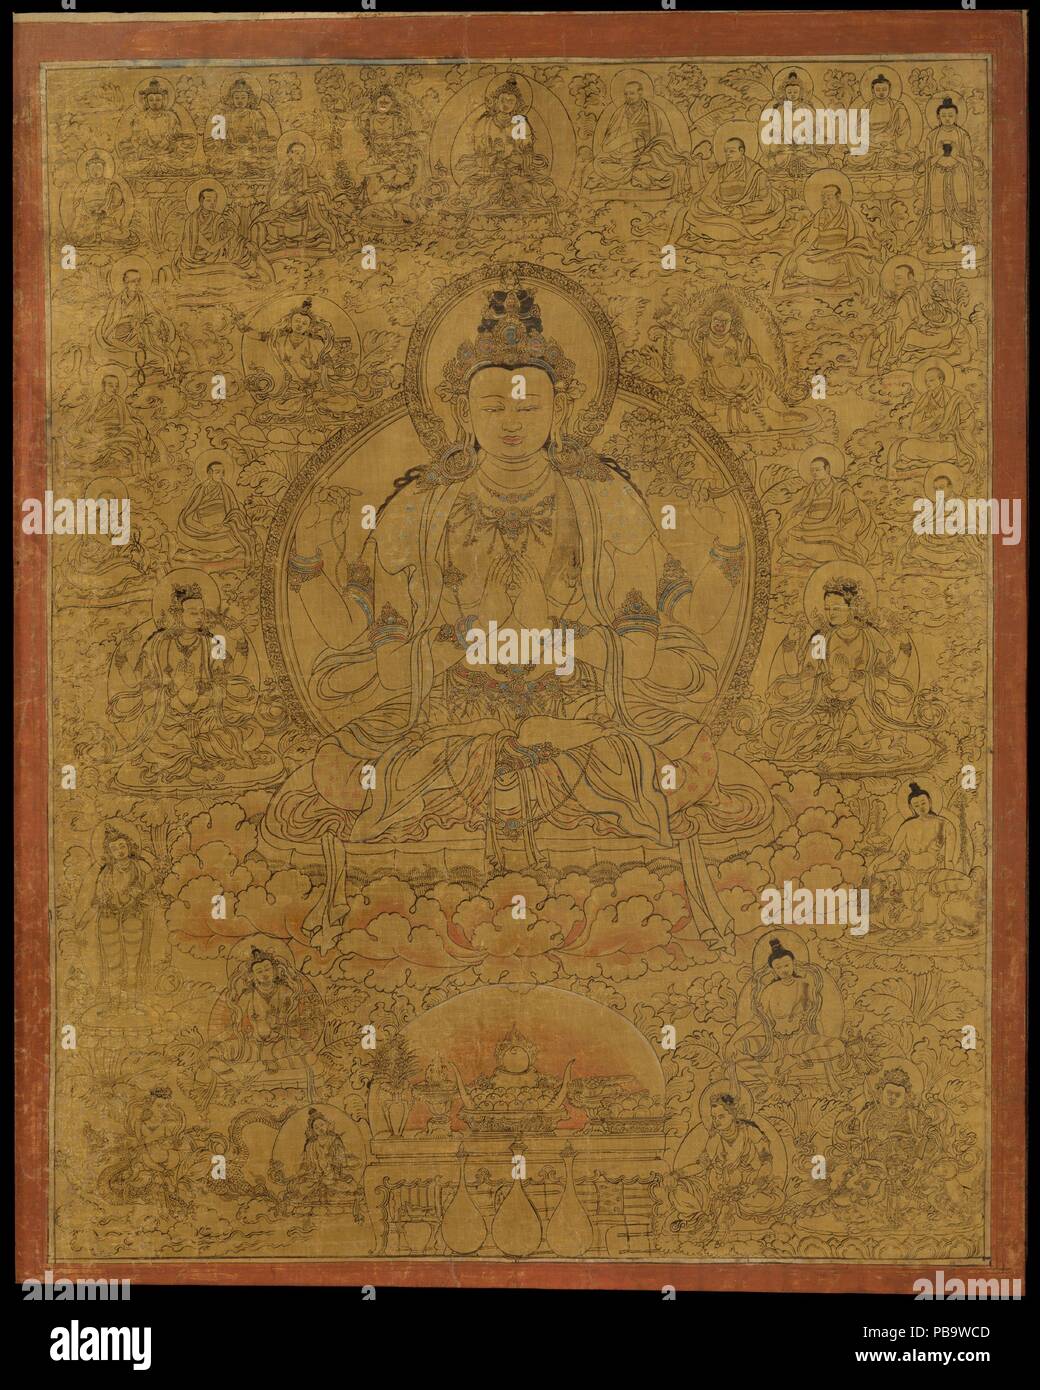 Sadaksari-Lokeshvara circondato da manifestazioni e Monaci. Cultura: Il Tibet. Dimensioni: Immagine: 40 3/8 x 31 1/4 in. (102,6 x 79,4 cm) incorniciato: 51 3/8 x 41 9/16 in. (130,5 x 105,6 cm). Data: tardo XV secolo. Il dipinto rappresenta la 'six-sillabe forma' di Avalokiteshvara, evocando il mantra Om mani padme hum. Intorno a lui sono bodhisattvas, un array di dispositivi di protezione, e di una linea di discendenza dei monaci. Questa manifestazione di Avalokiteshvara è particolarmente associato con il Dalai Lama, che viene inteso come una incarnazione di questo modulo. Sadasari è convenzionalmente bianco, anche se qui è rappresentata tutti i g Foto Stock